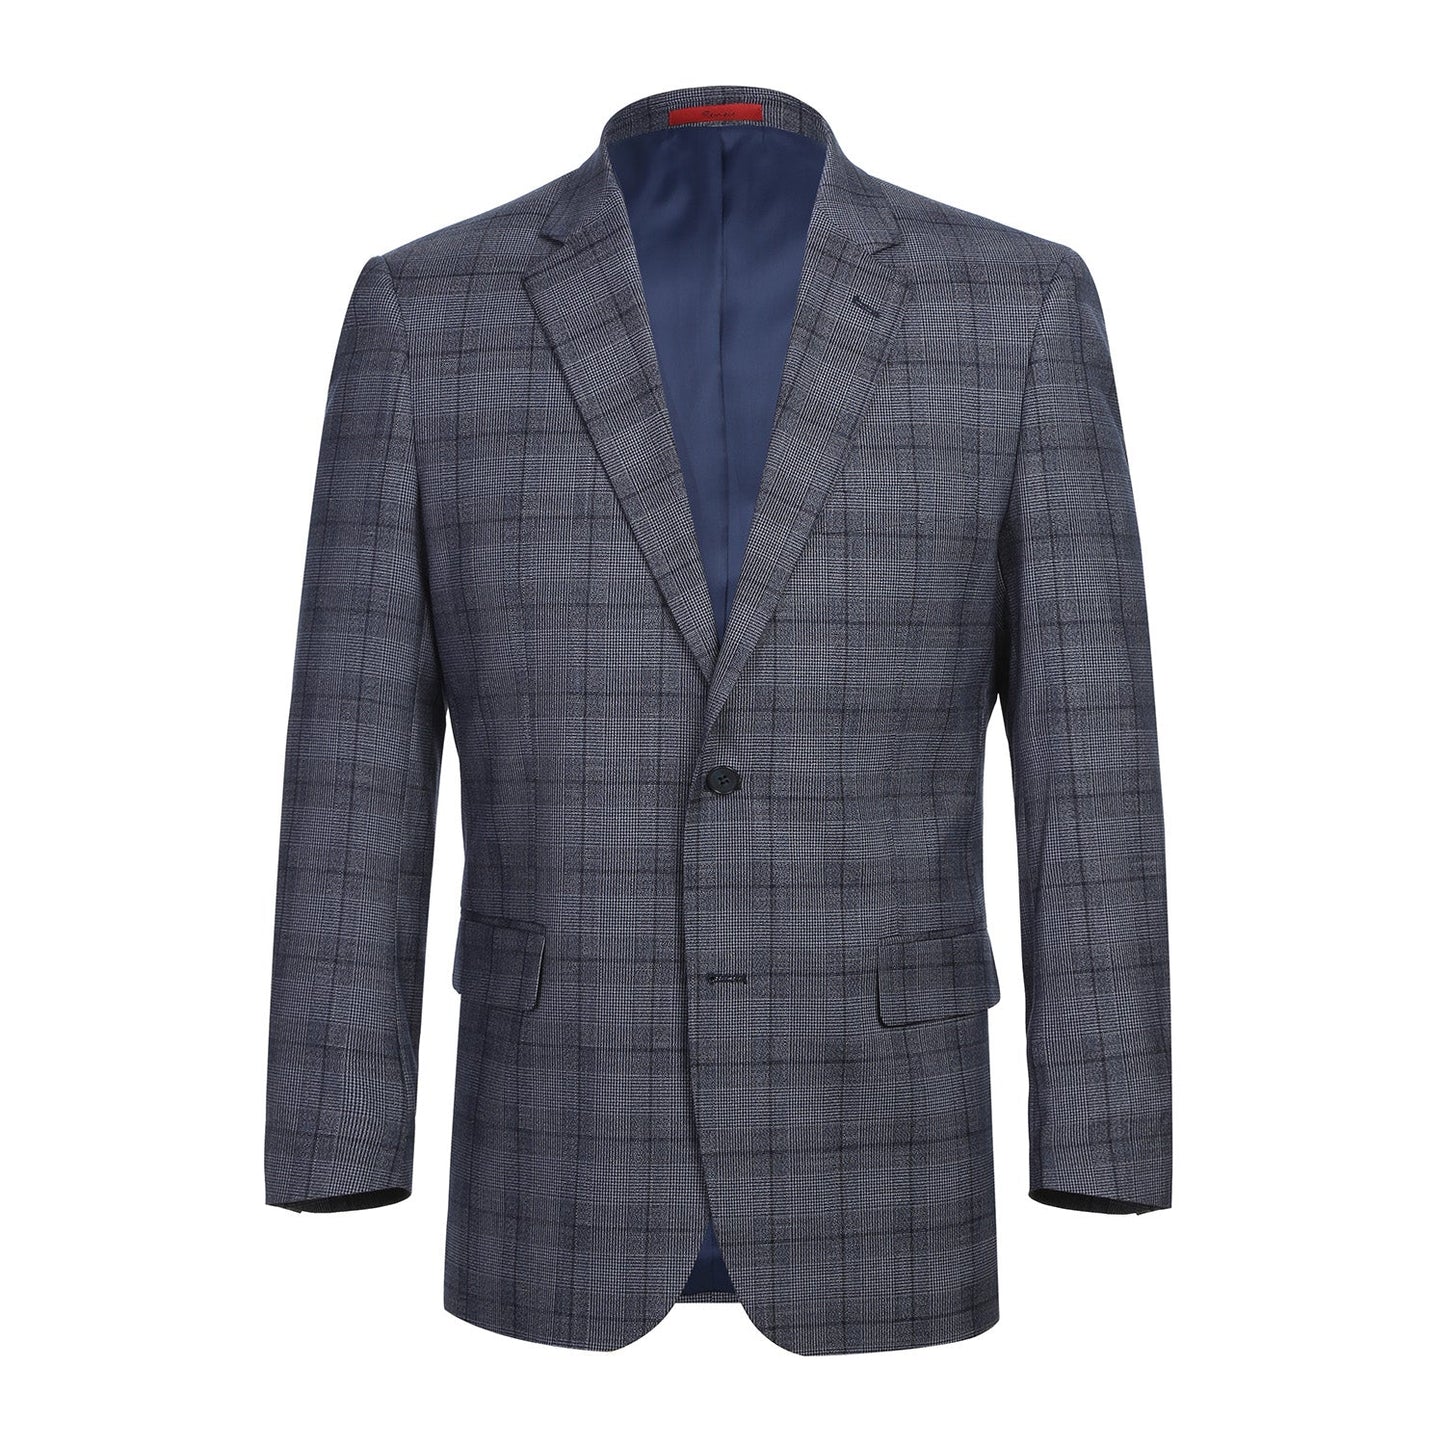 293-30 Men's Classic Fit Blue Plaid Suit